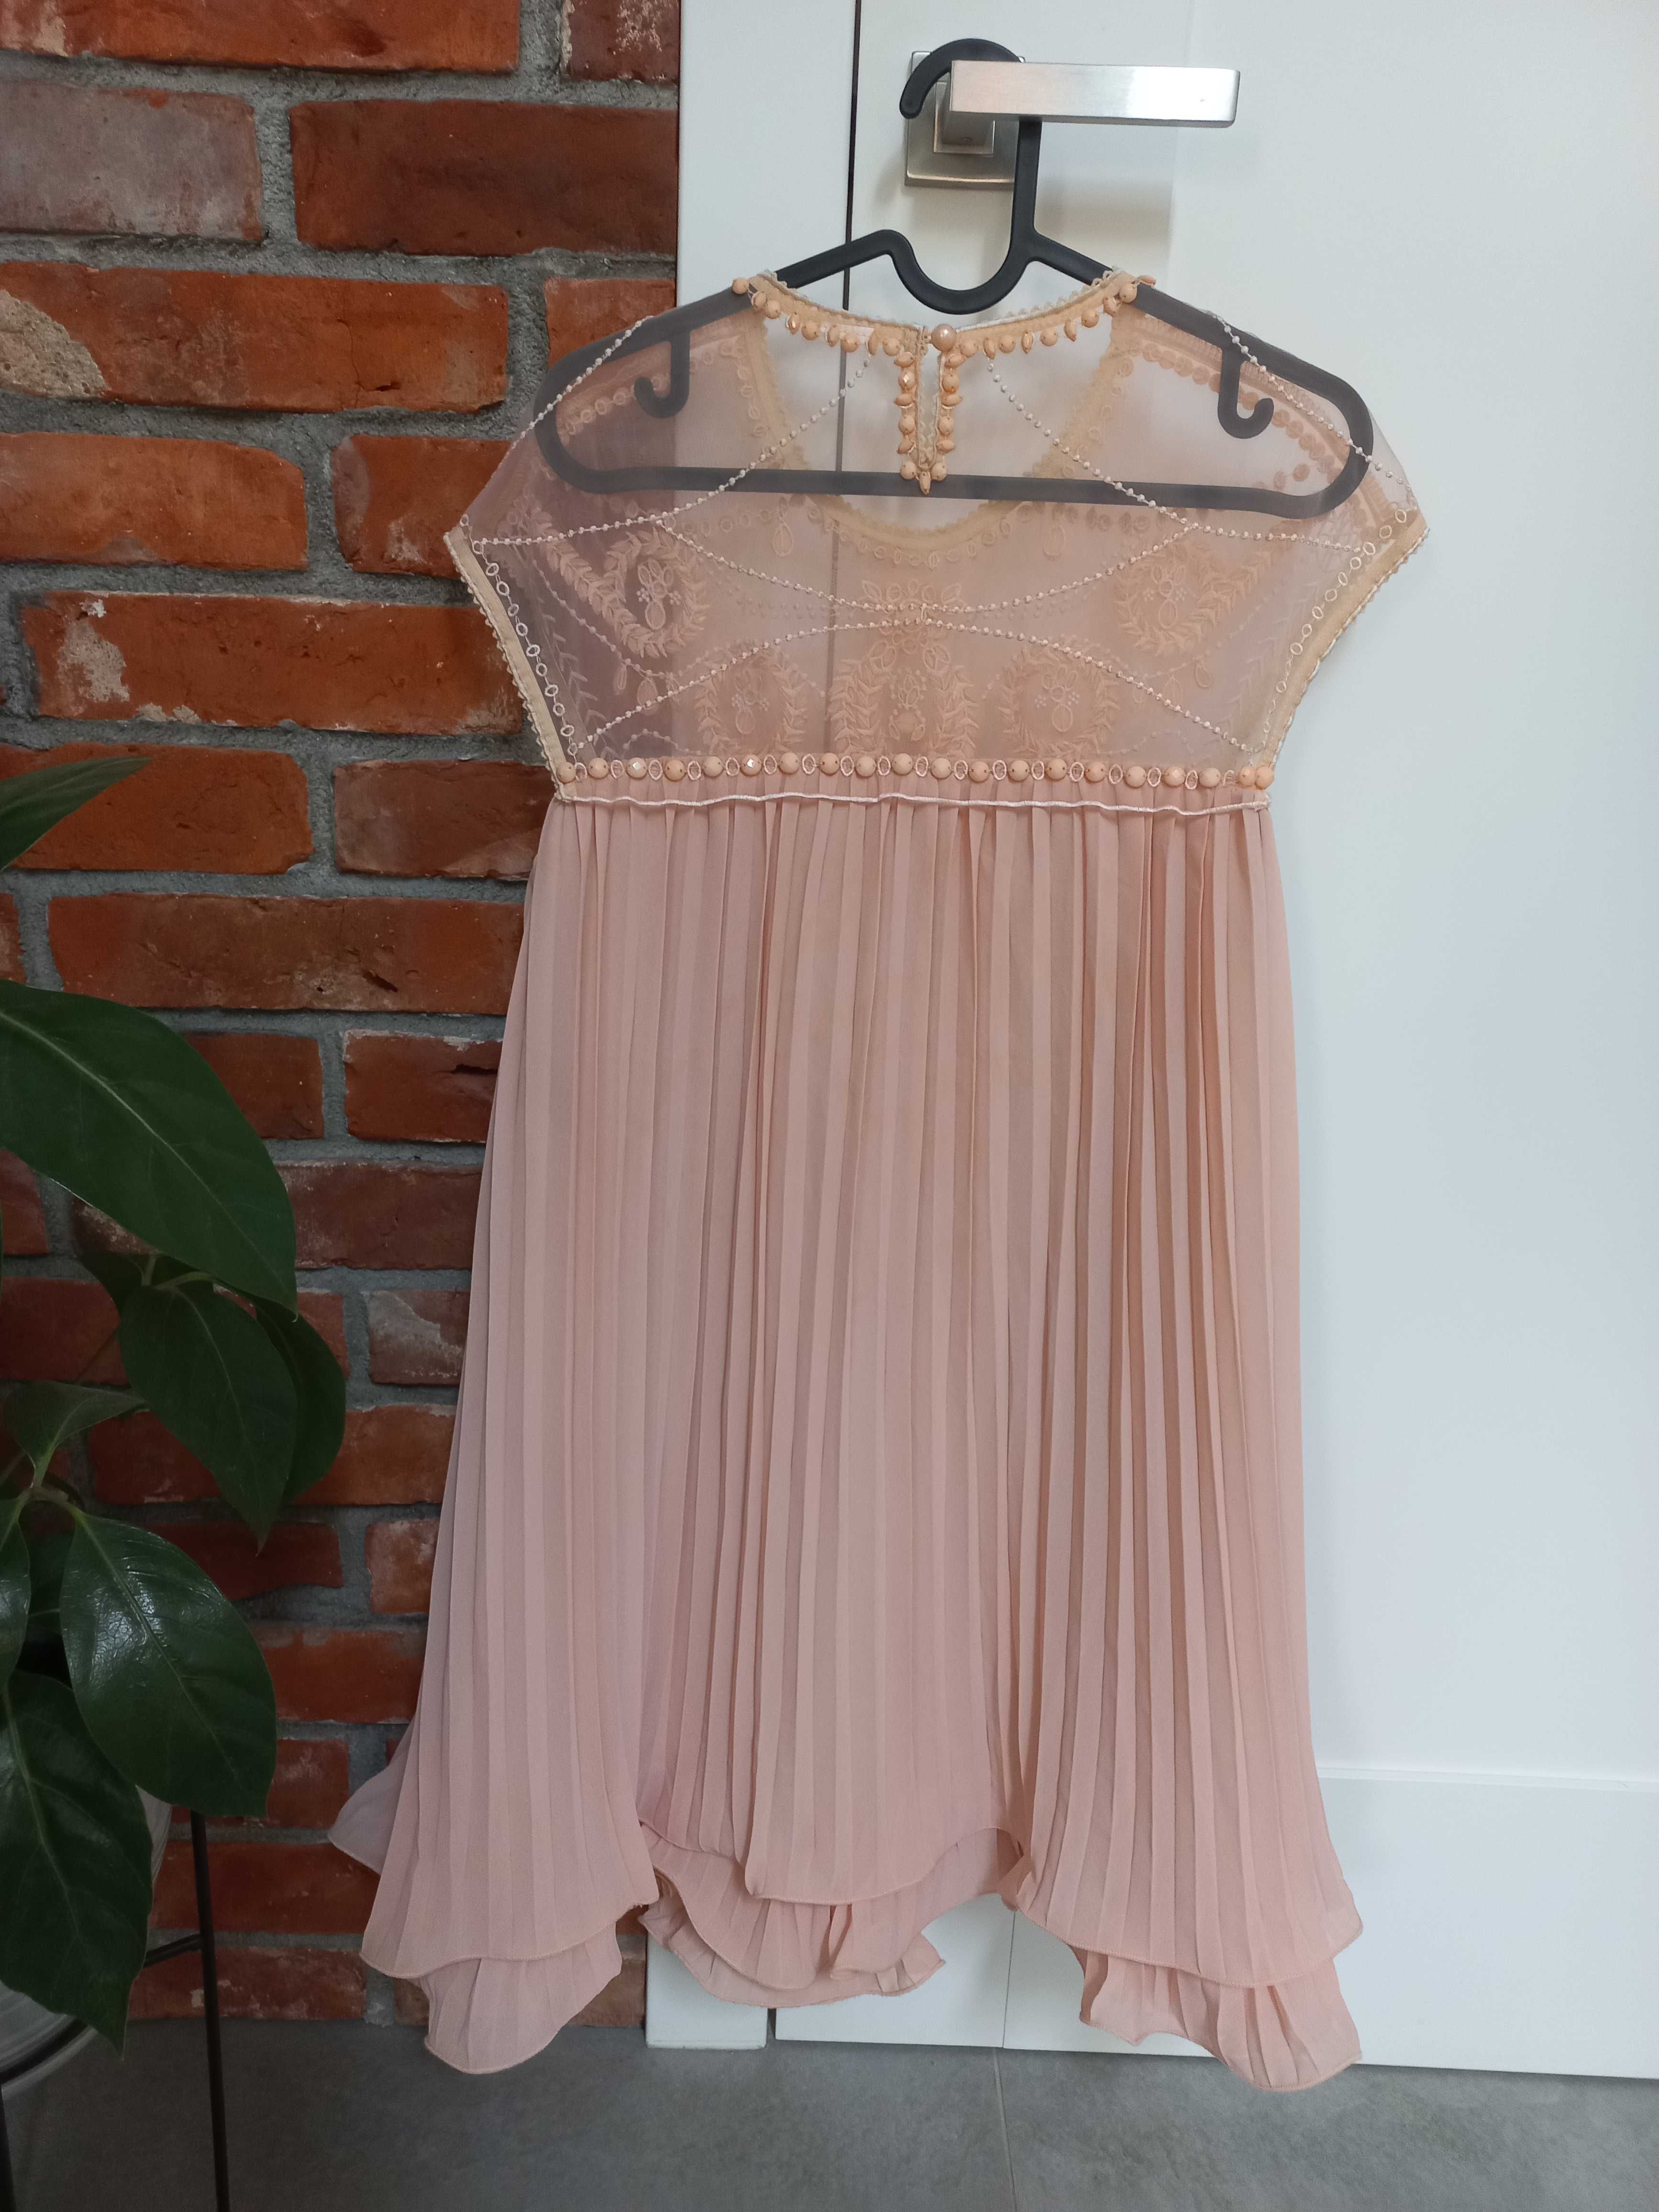 Śliczna sukienka brzoskwiniowa na wesele Castillo S/M